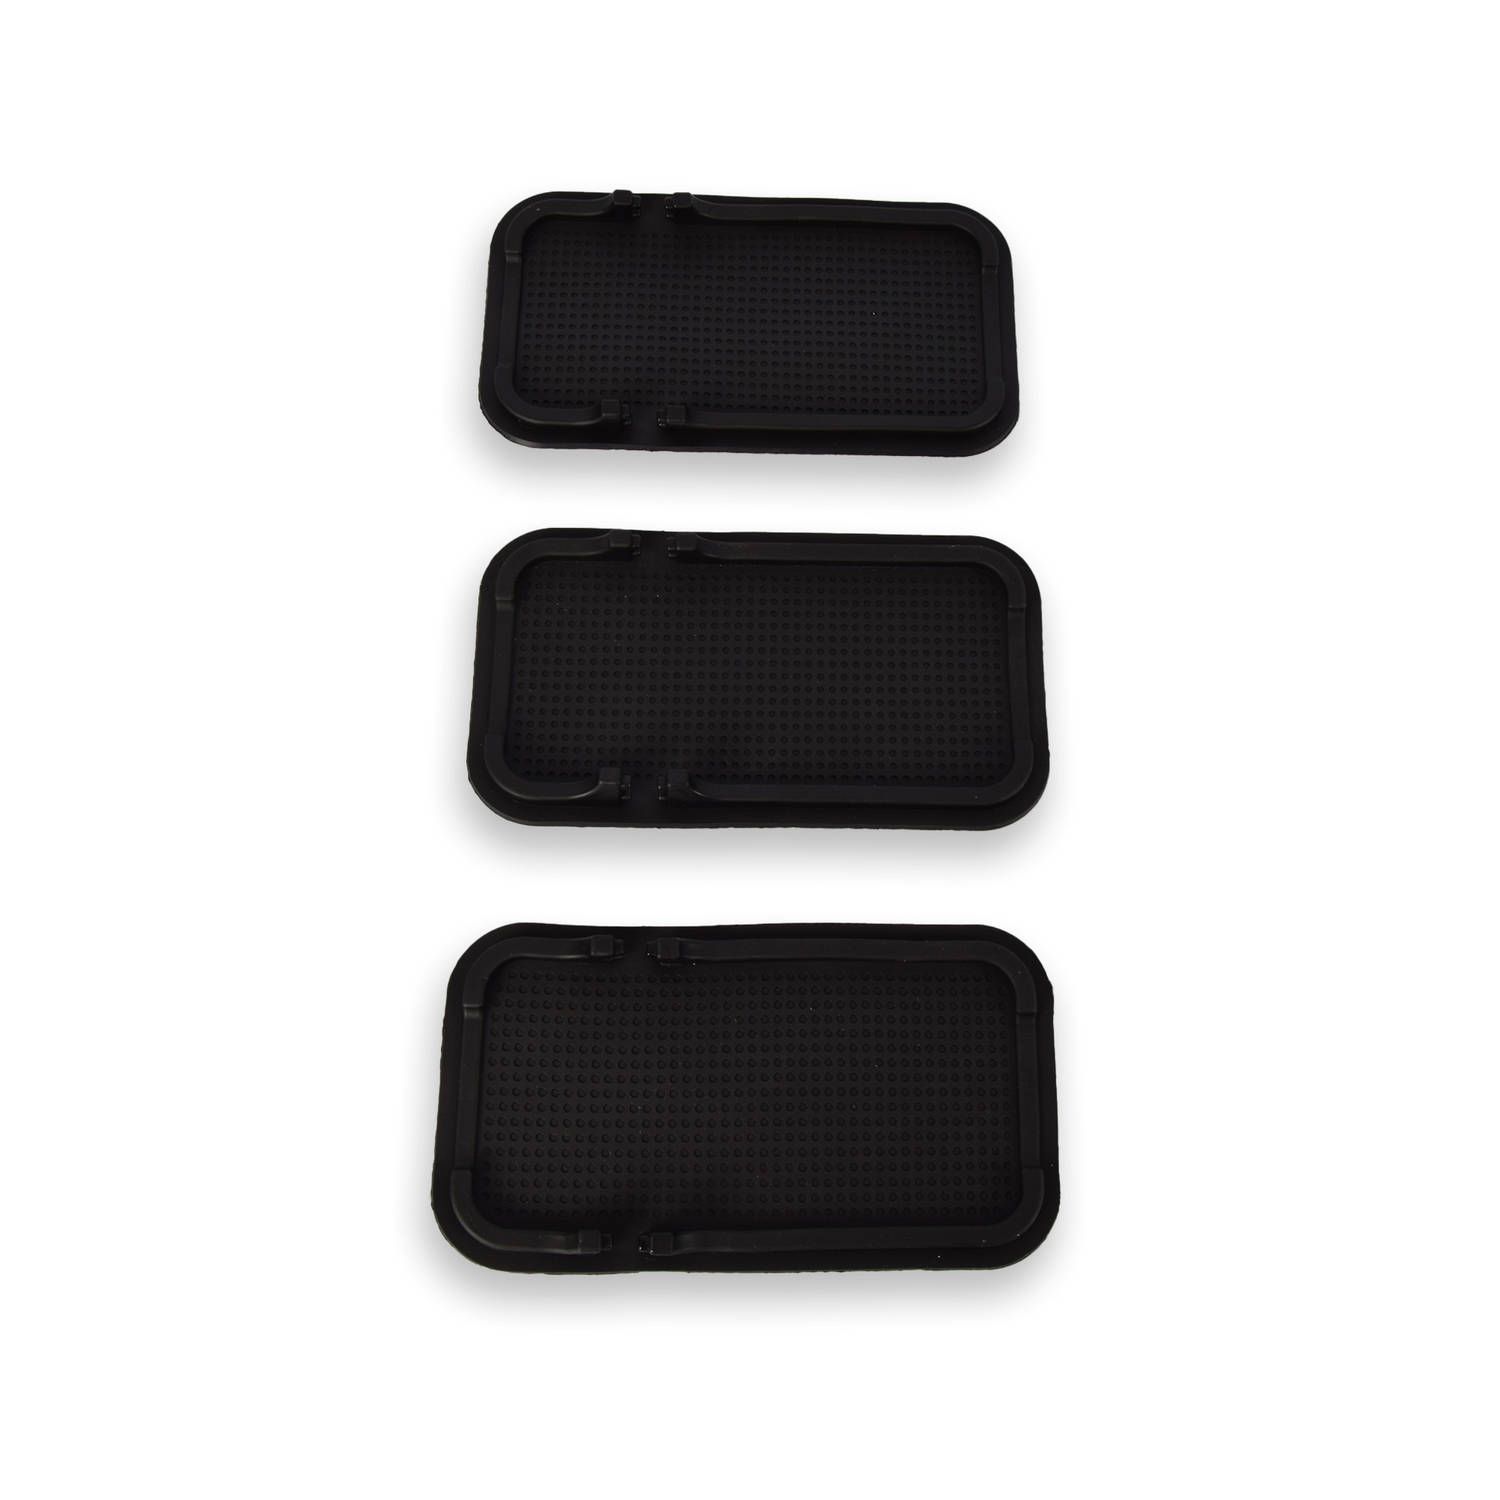 Set van 3 Zwarte Kunststof Auto & Bureau Antislipmatten - Dashboard Anti-slip Grip Matje - Smartphone Telefoon Munten Houder - Geweldig voor Gebruik op Werkruimte - 10.5cm x 18.5cm